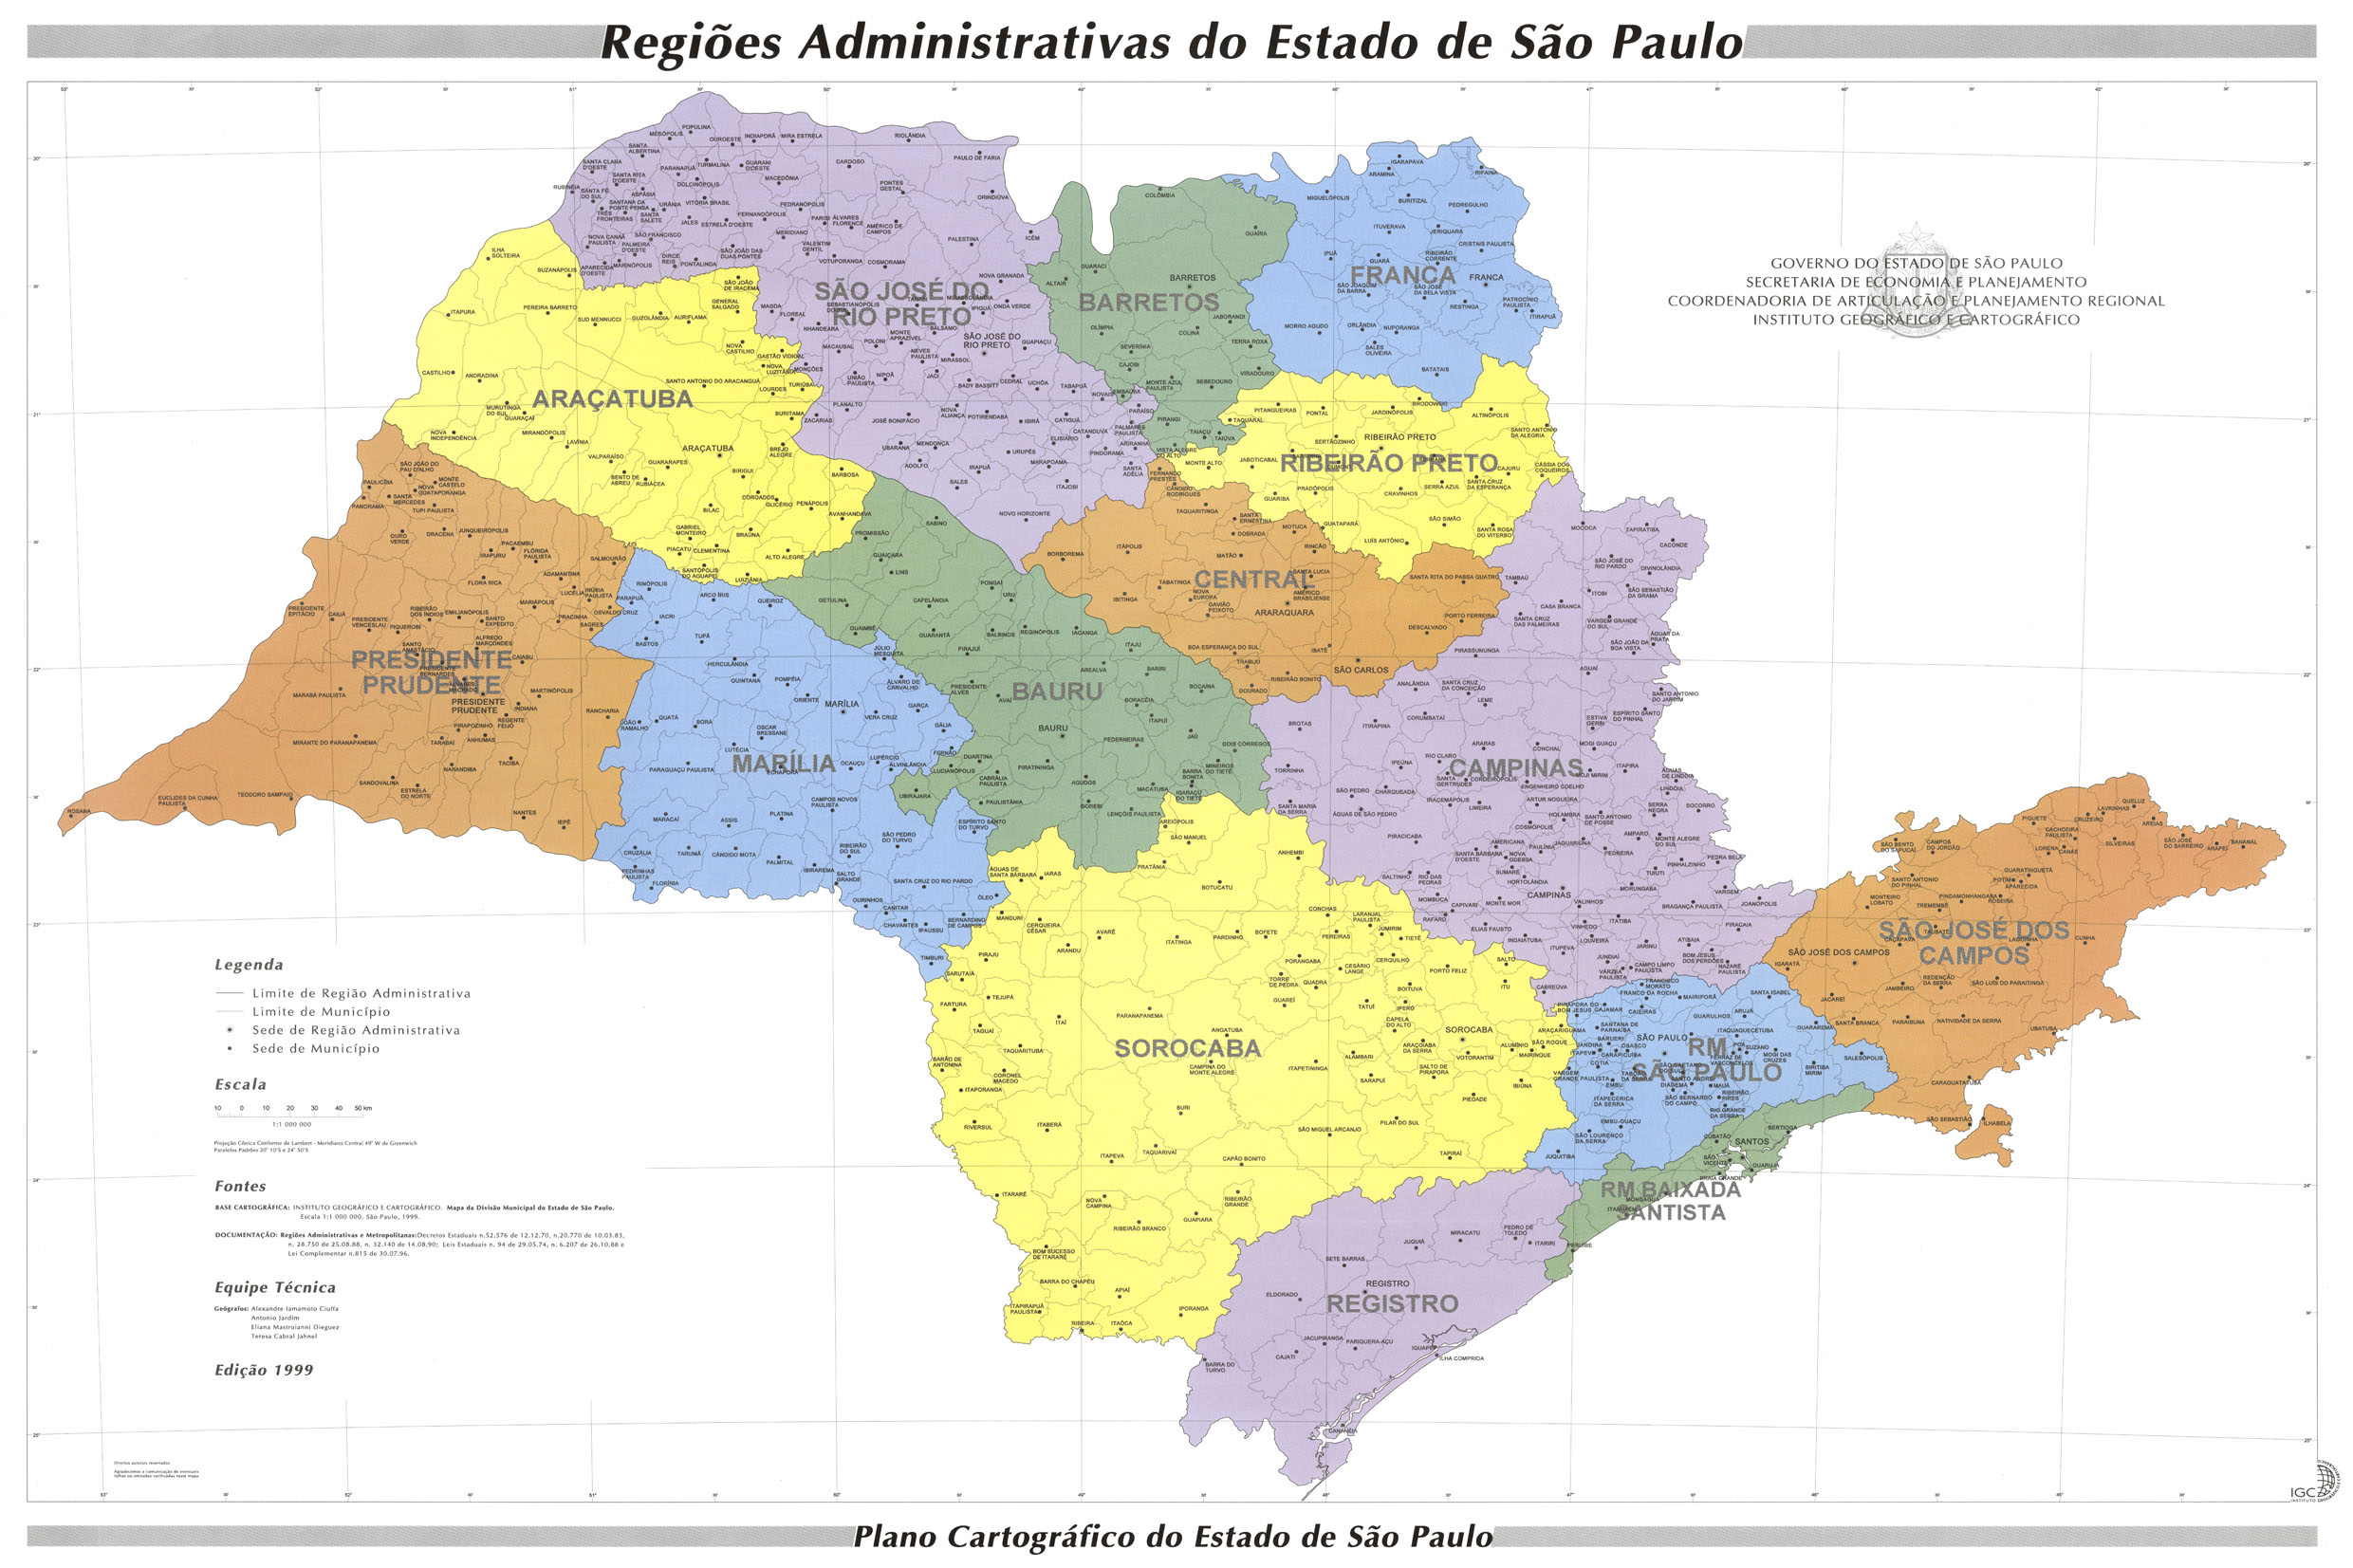 Regies Administrativas do Estado de So Paulo, edio de 1999, organizada pelo Governo do Estado de So Paulo, Secretaria de Planejamento, Instituto Geogrfico e Geolgico <a style='float:right;color:#ccc' href='https://www3.al.sp.gov.br/repositorio/noticia/N-08-2015/fg173739.jpg' target=_blank><i class='bi bi-zoom-in'></i> Clique para ver a imagem </a>